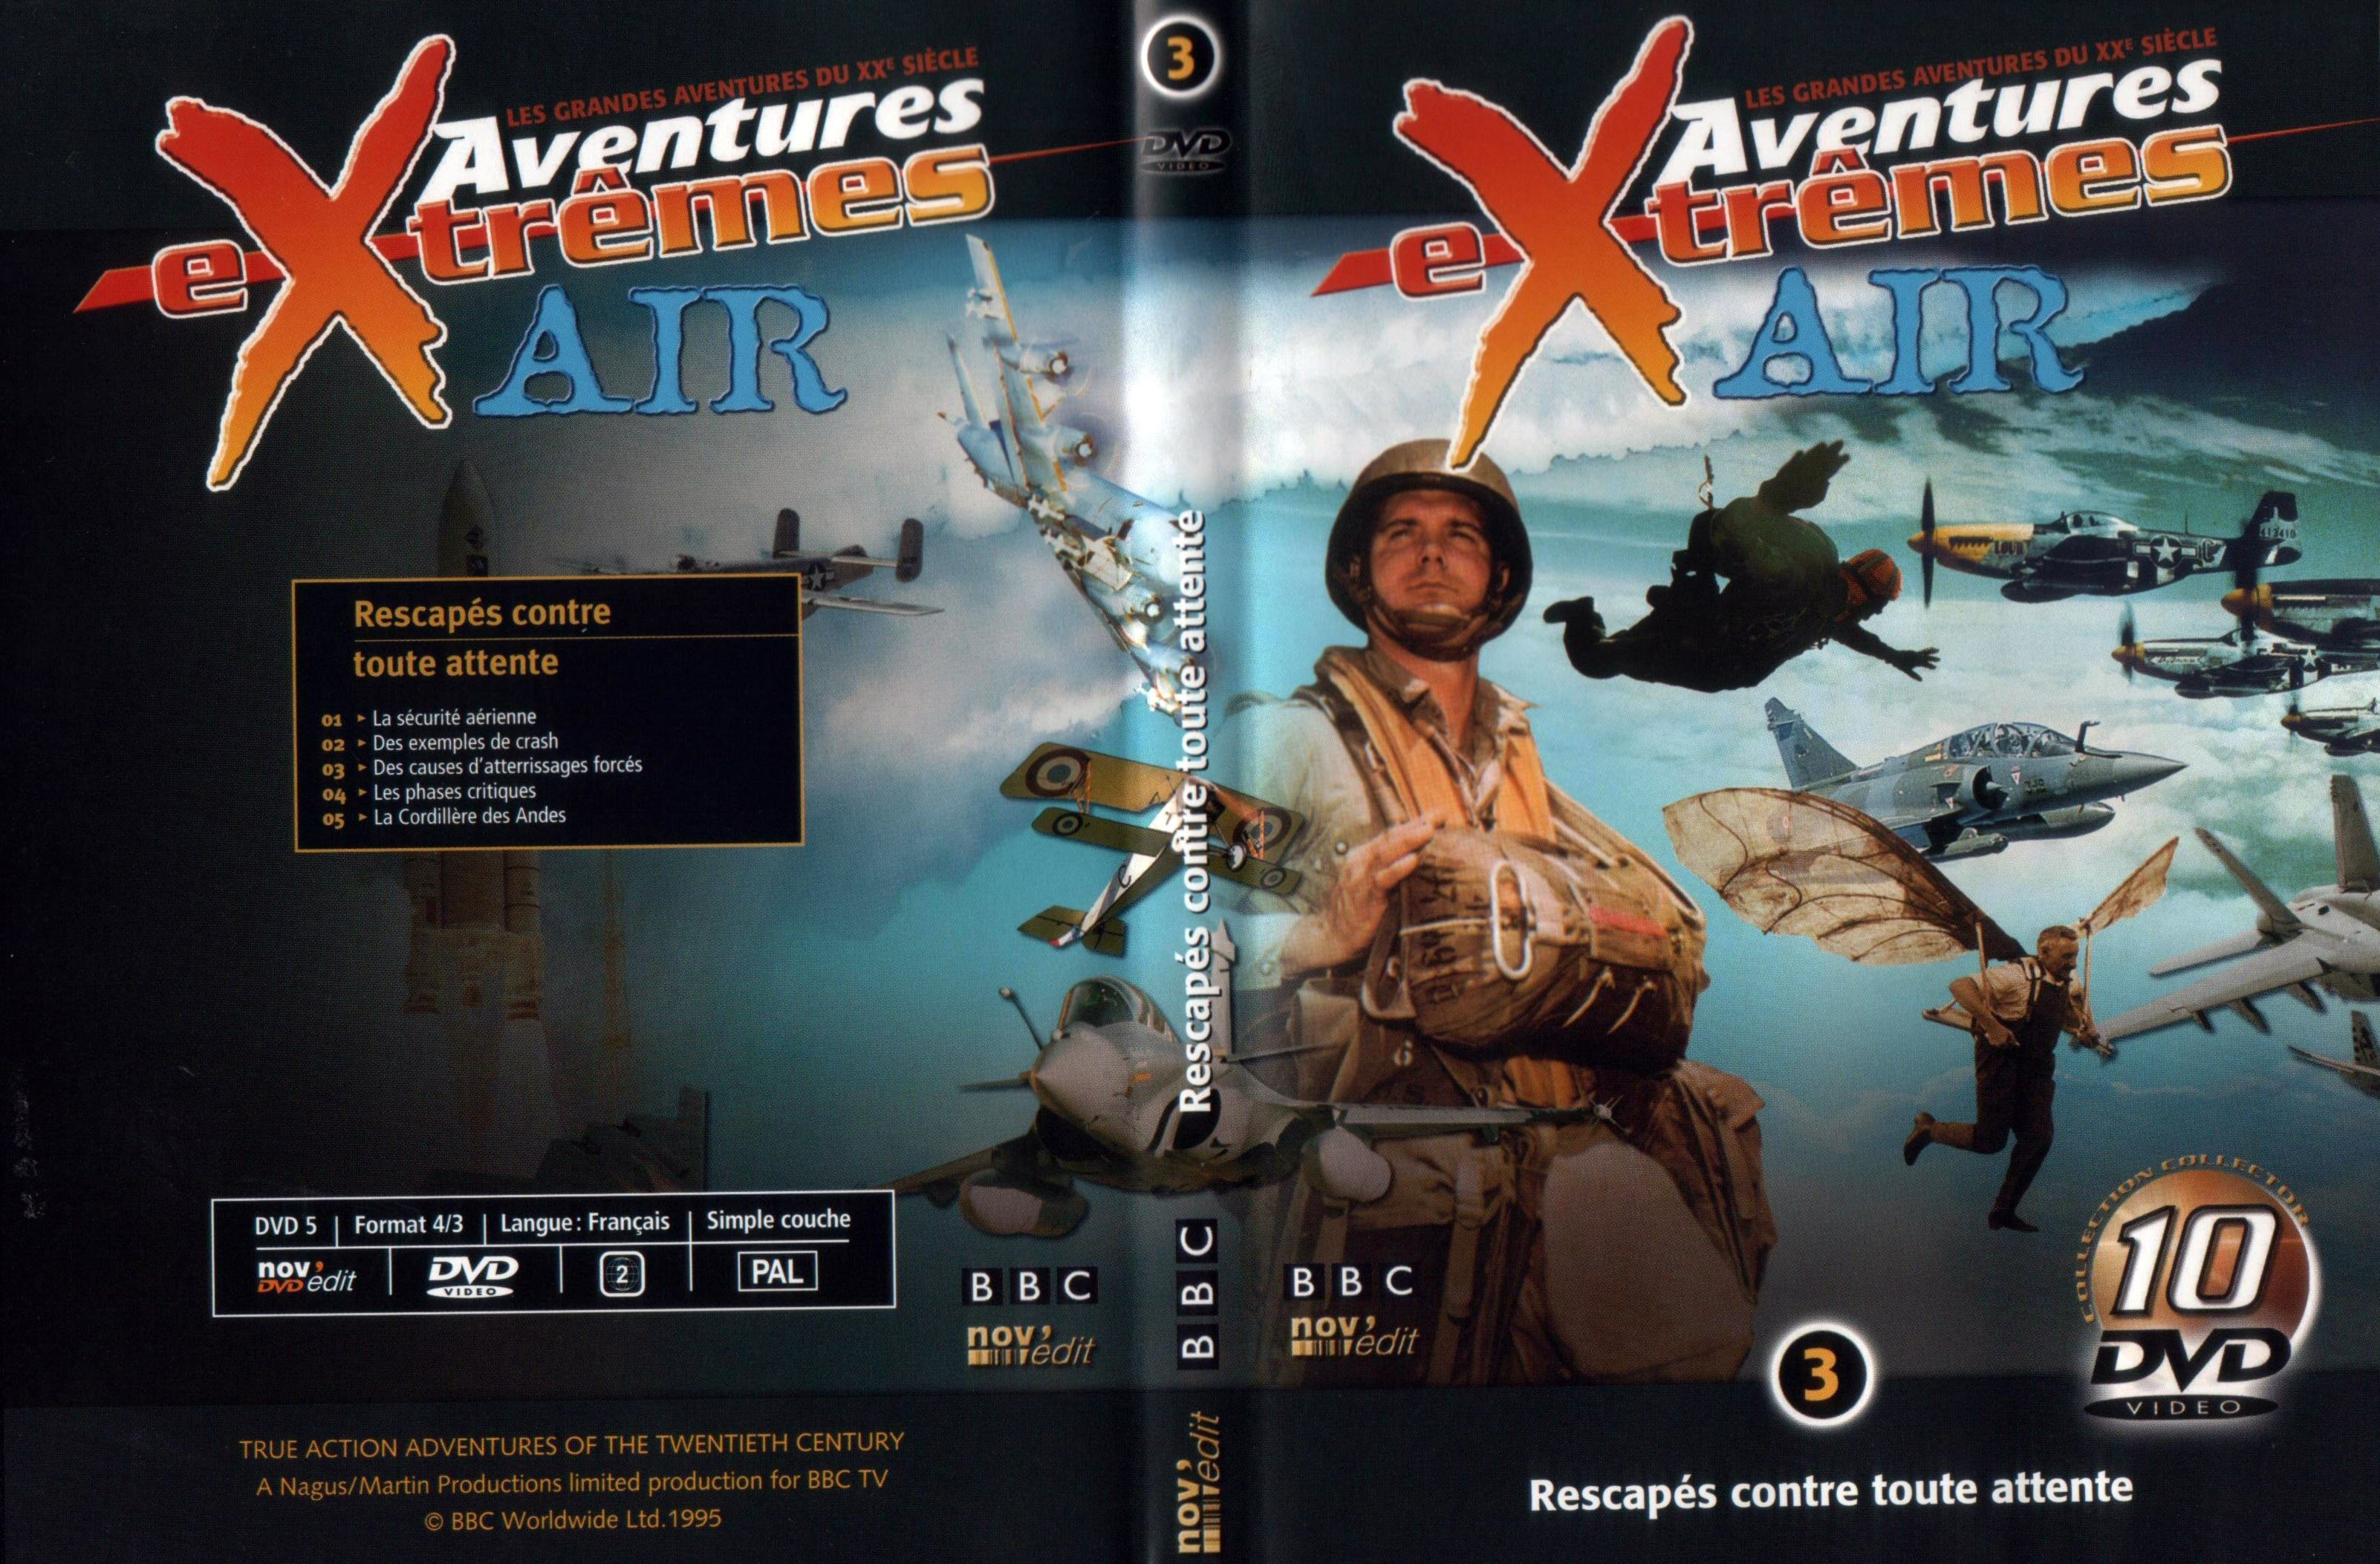 Jaquette DVD Aventures extremes air vol 3 rescaps contre toute attente